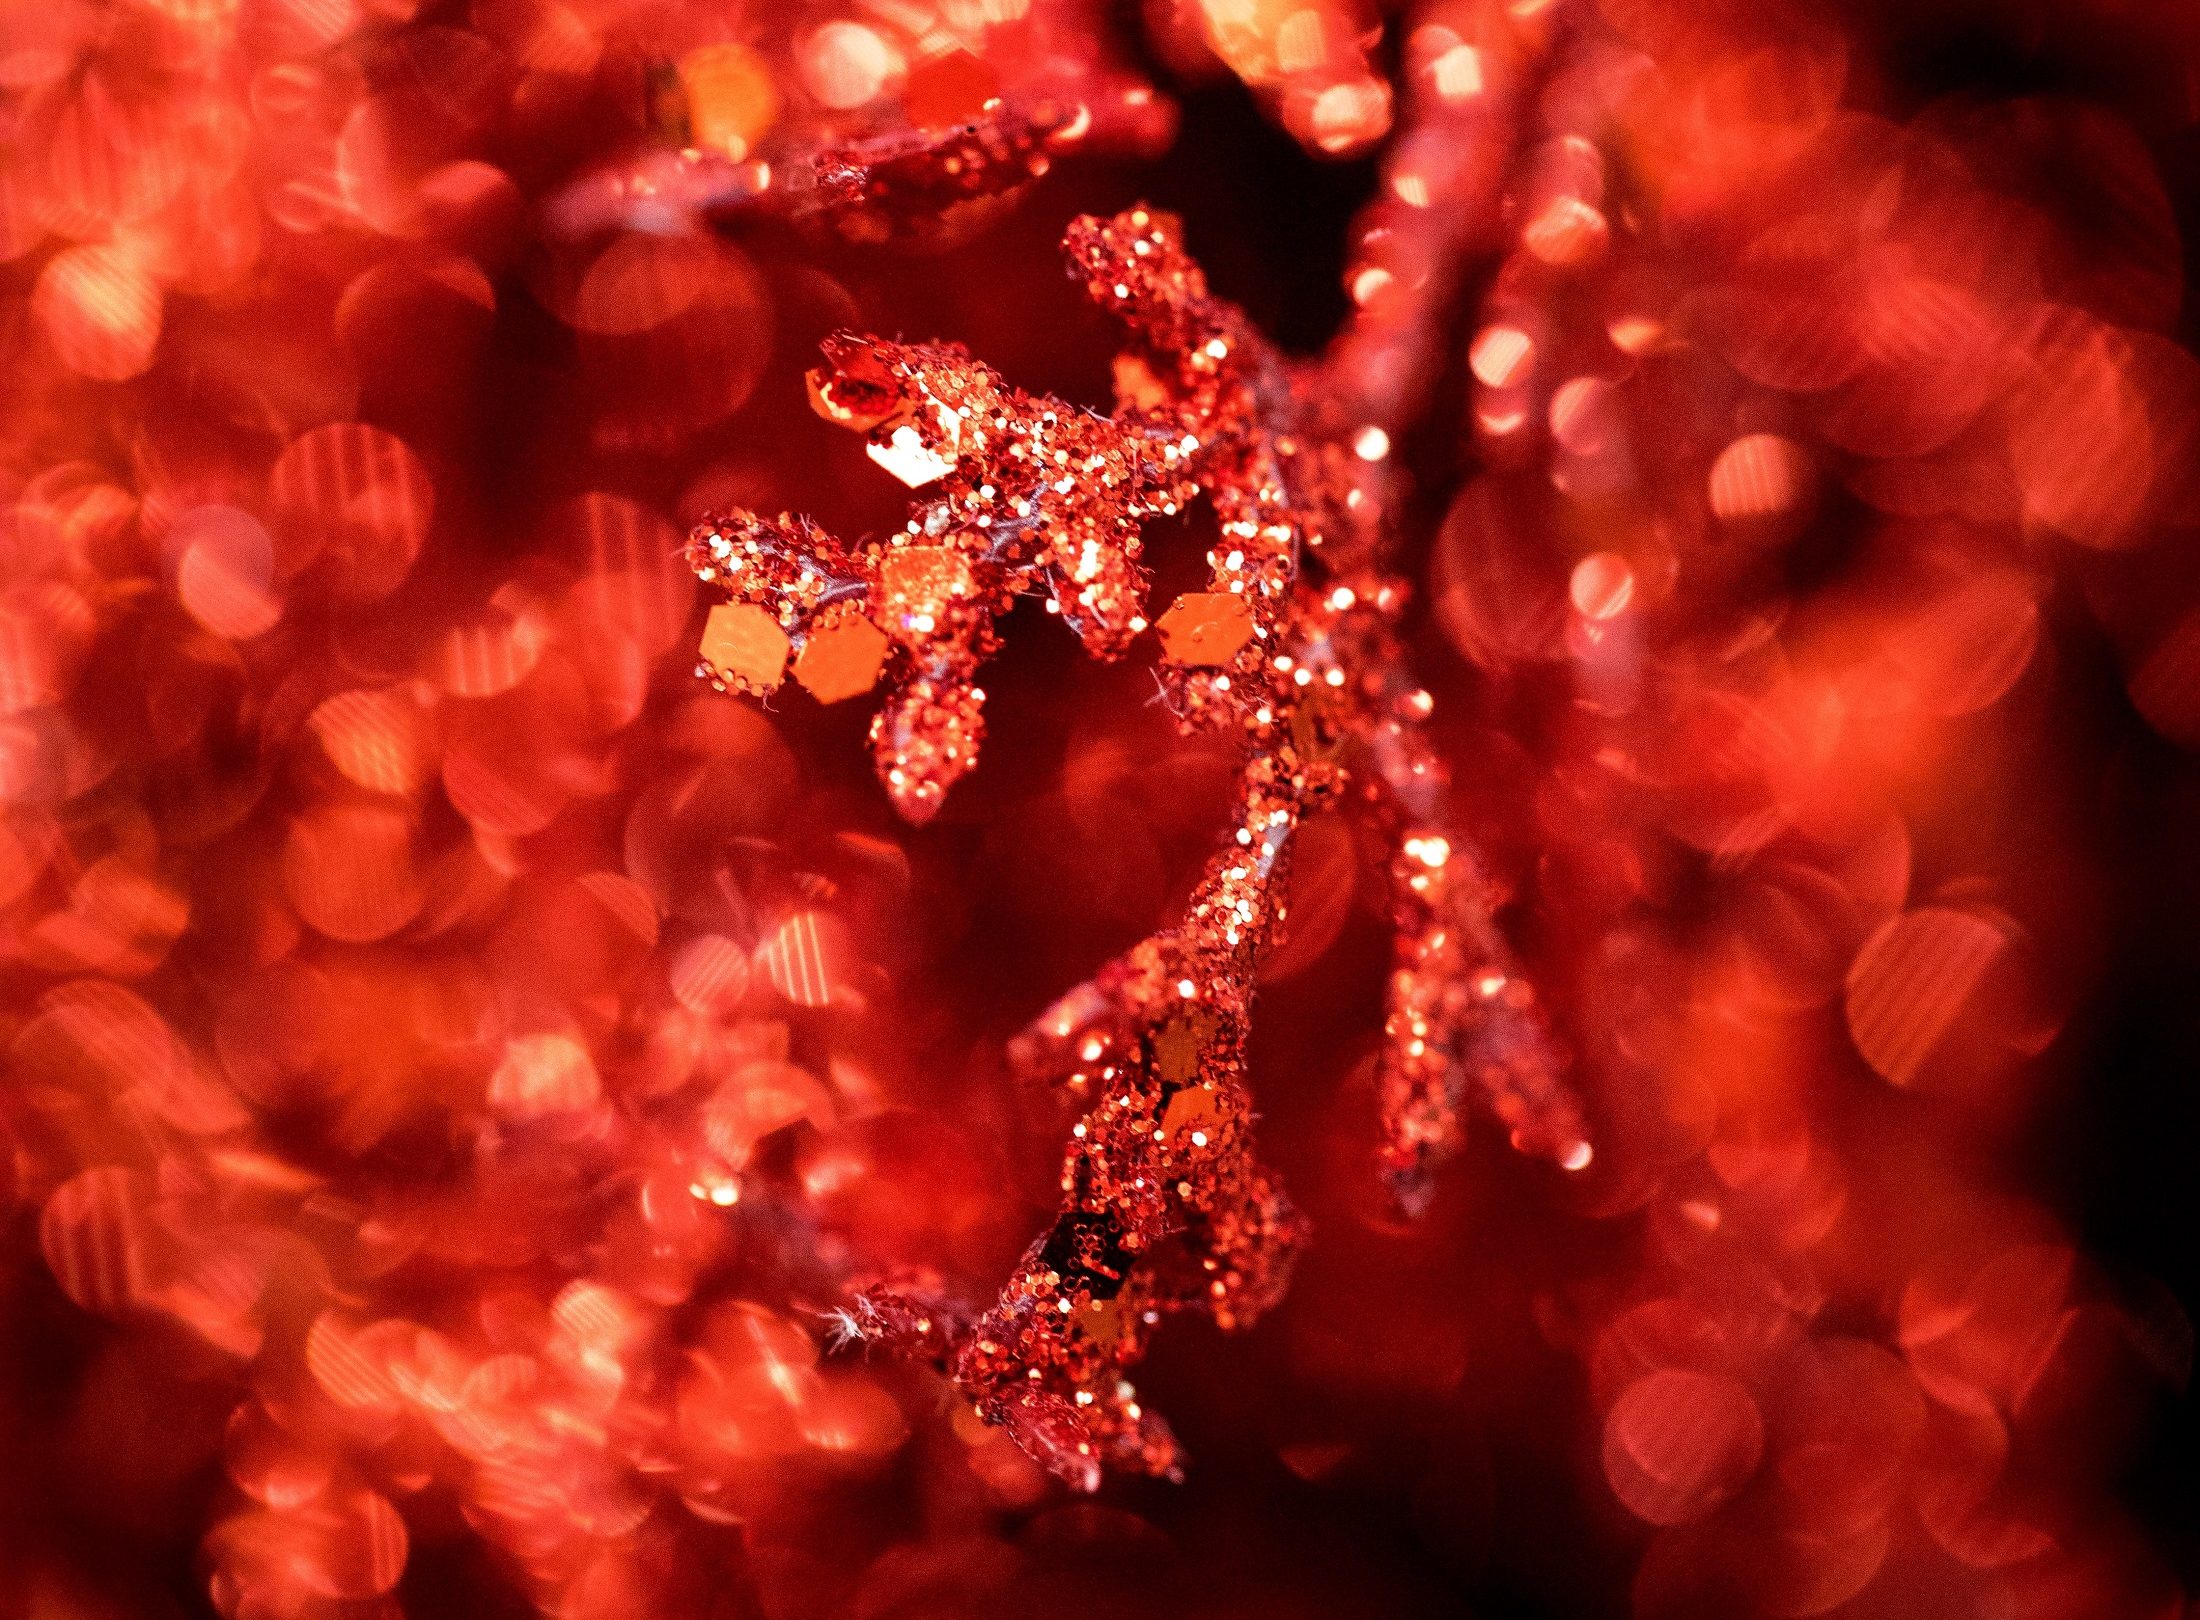 Et nærbillede af en rød gren med mange gnistre, der skaber en magisk atmosfære perfekt til Julehygge med sine kære.